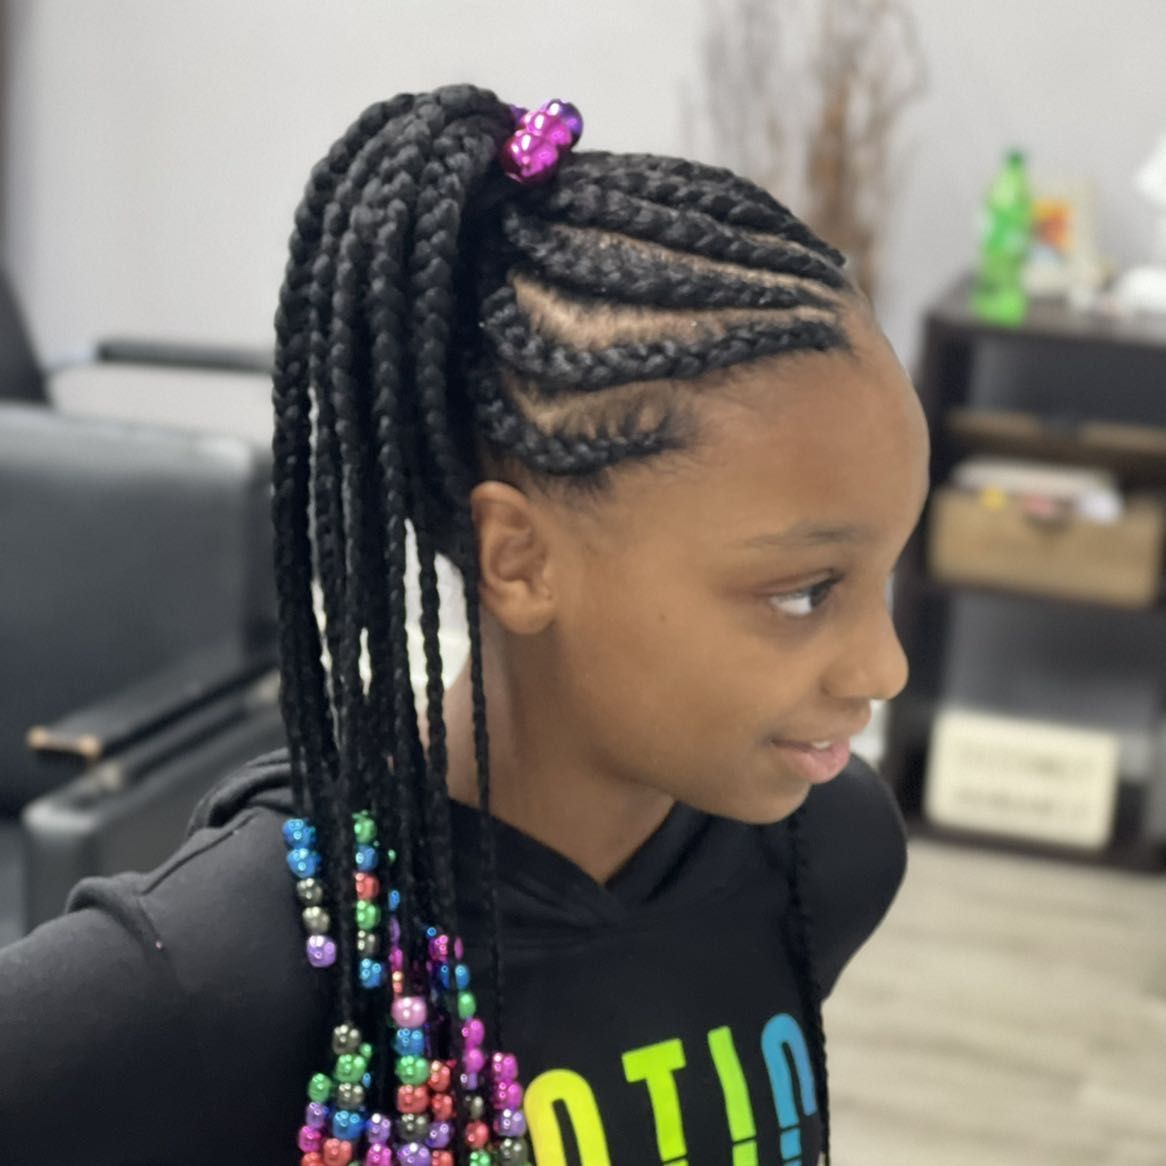 Kids style / add in hair (10 and under) portfolio